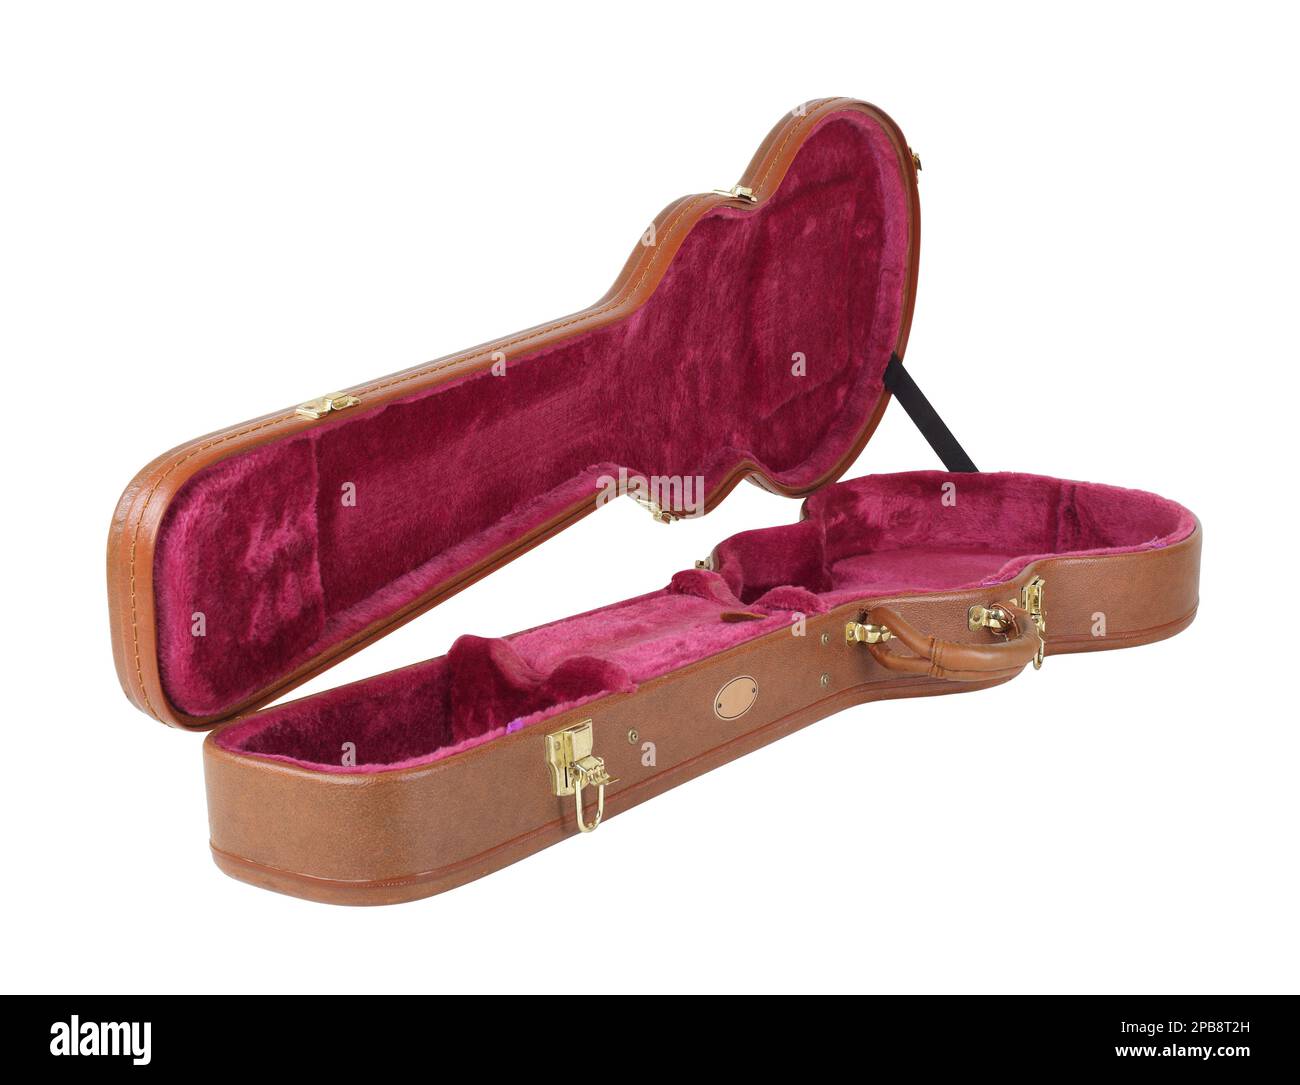 Musikinstrument – Offener Hartschalenkoffer mit brauner und roter Elektrogitarre, isoliert auf Holzhintergrund Stockfoto